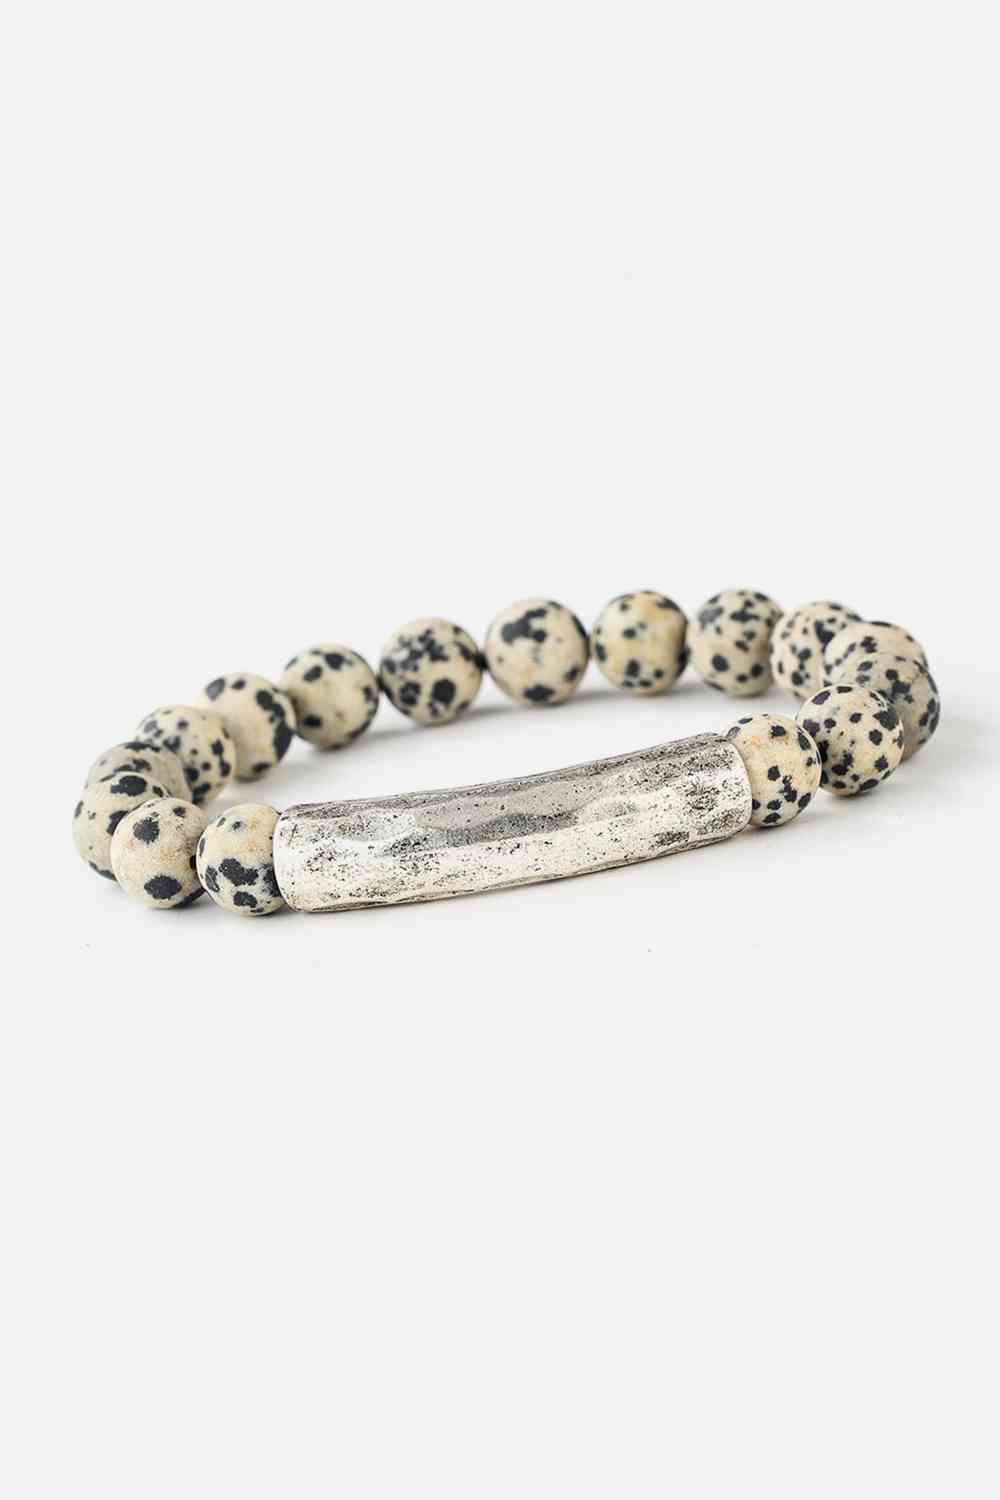 Natural Stone Beaded Bracelet Style I One Size